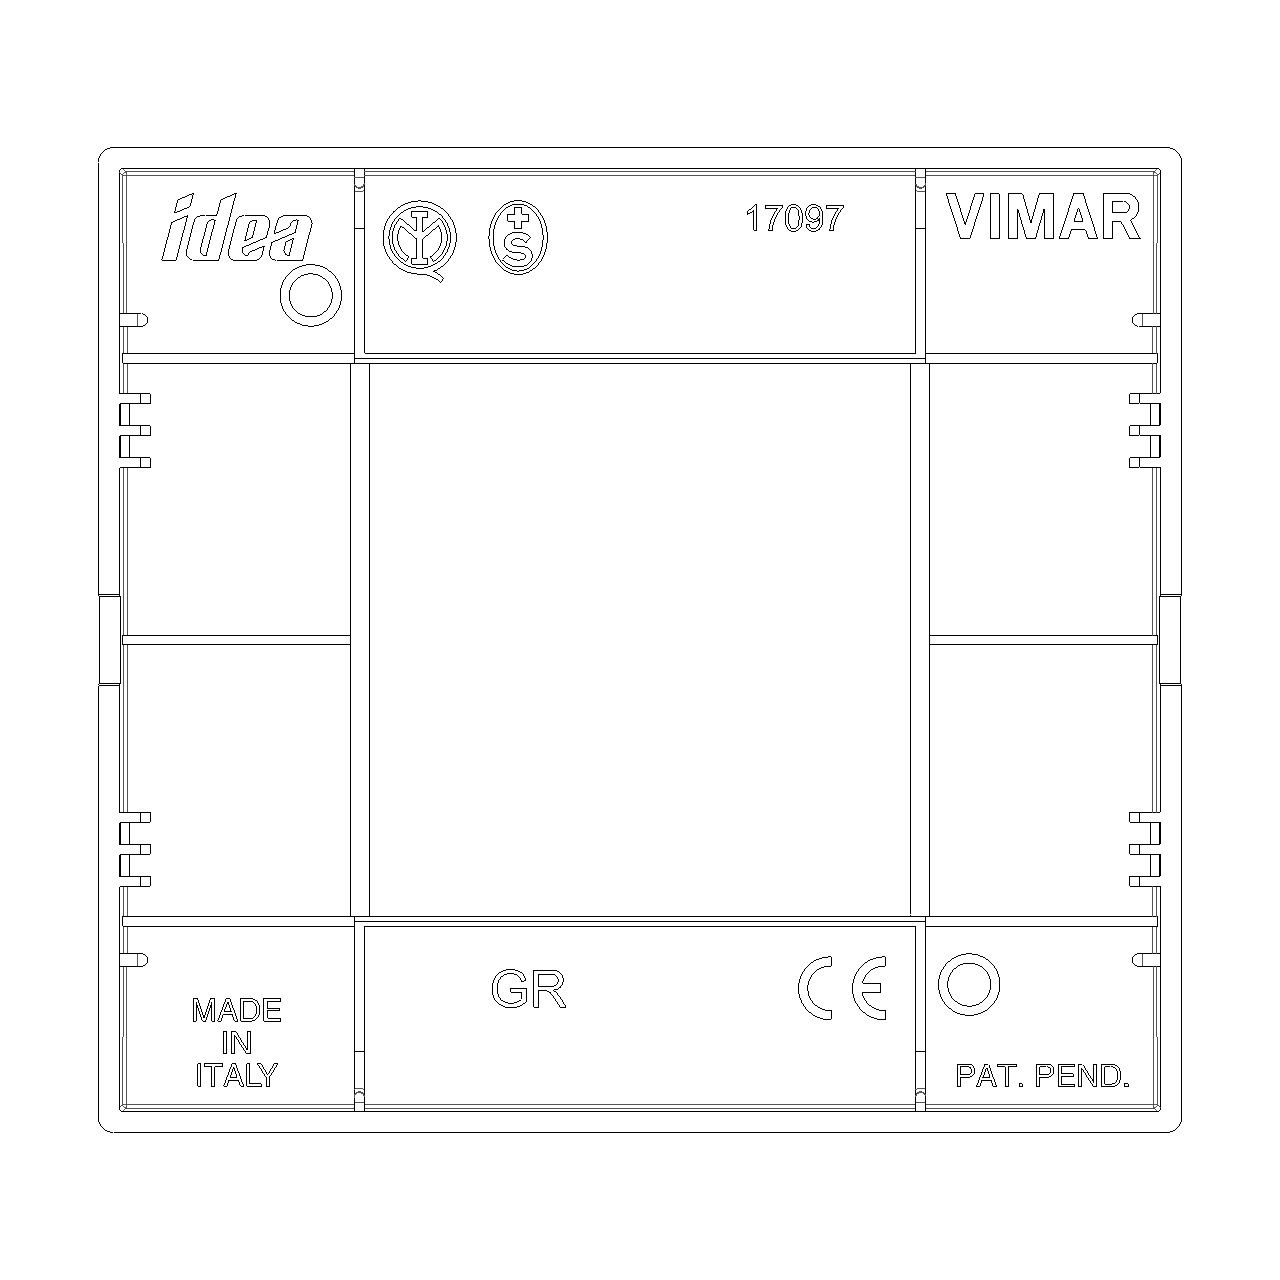 Vimar - Idea Classica Cover Plate - Technopolymer, Graphite Grey - Apollo Lighting